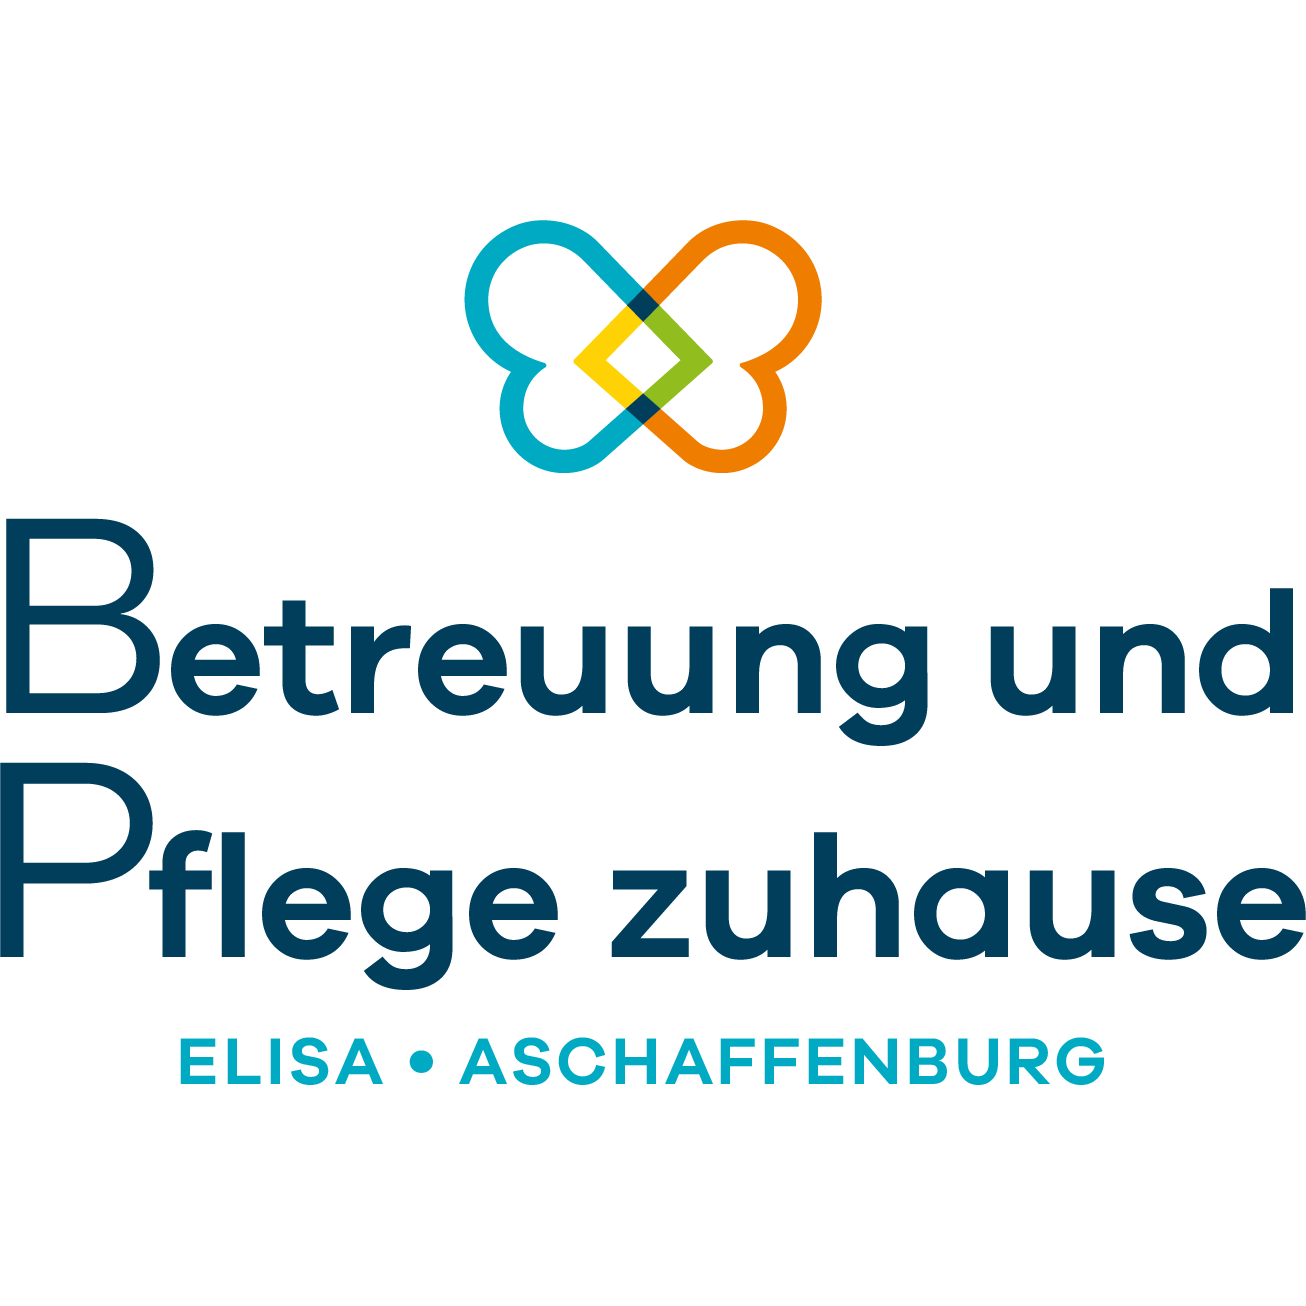 Betreuung und Pflege zuhause Curanum am Rhein in Köln - Logo